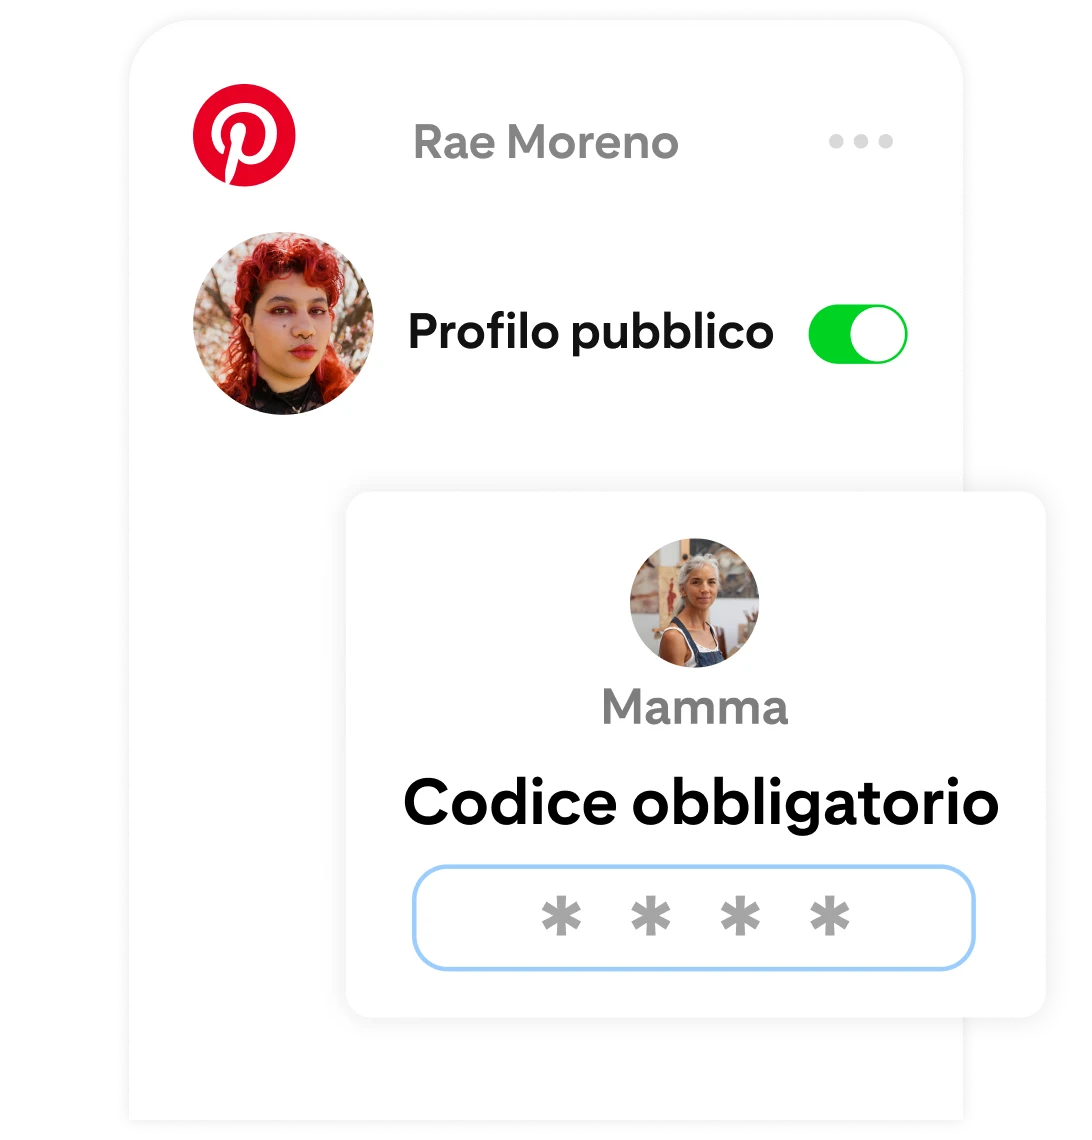 Pagina delle impostazioni di Pinterest di Andrea Moreno, dove è attivata l'opzione "Profilo pubblico", ma richiede a un genitore di inserire un codice per confermare la modifica.